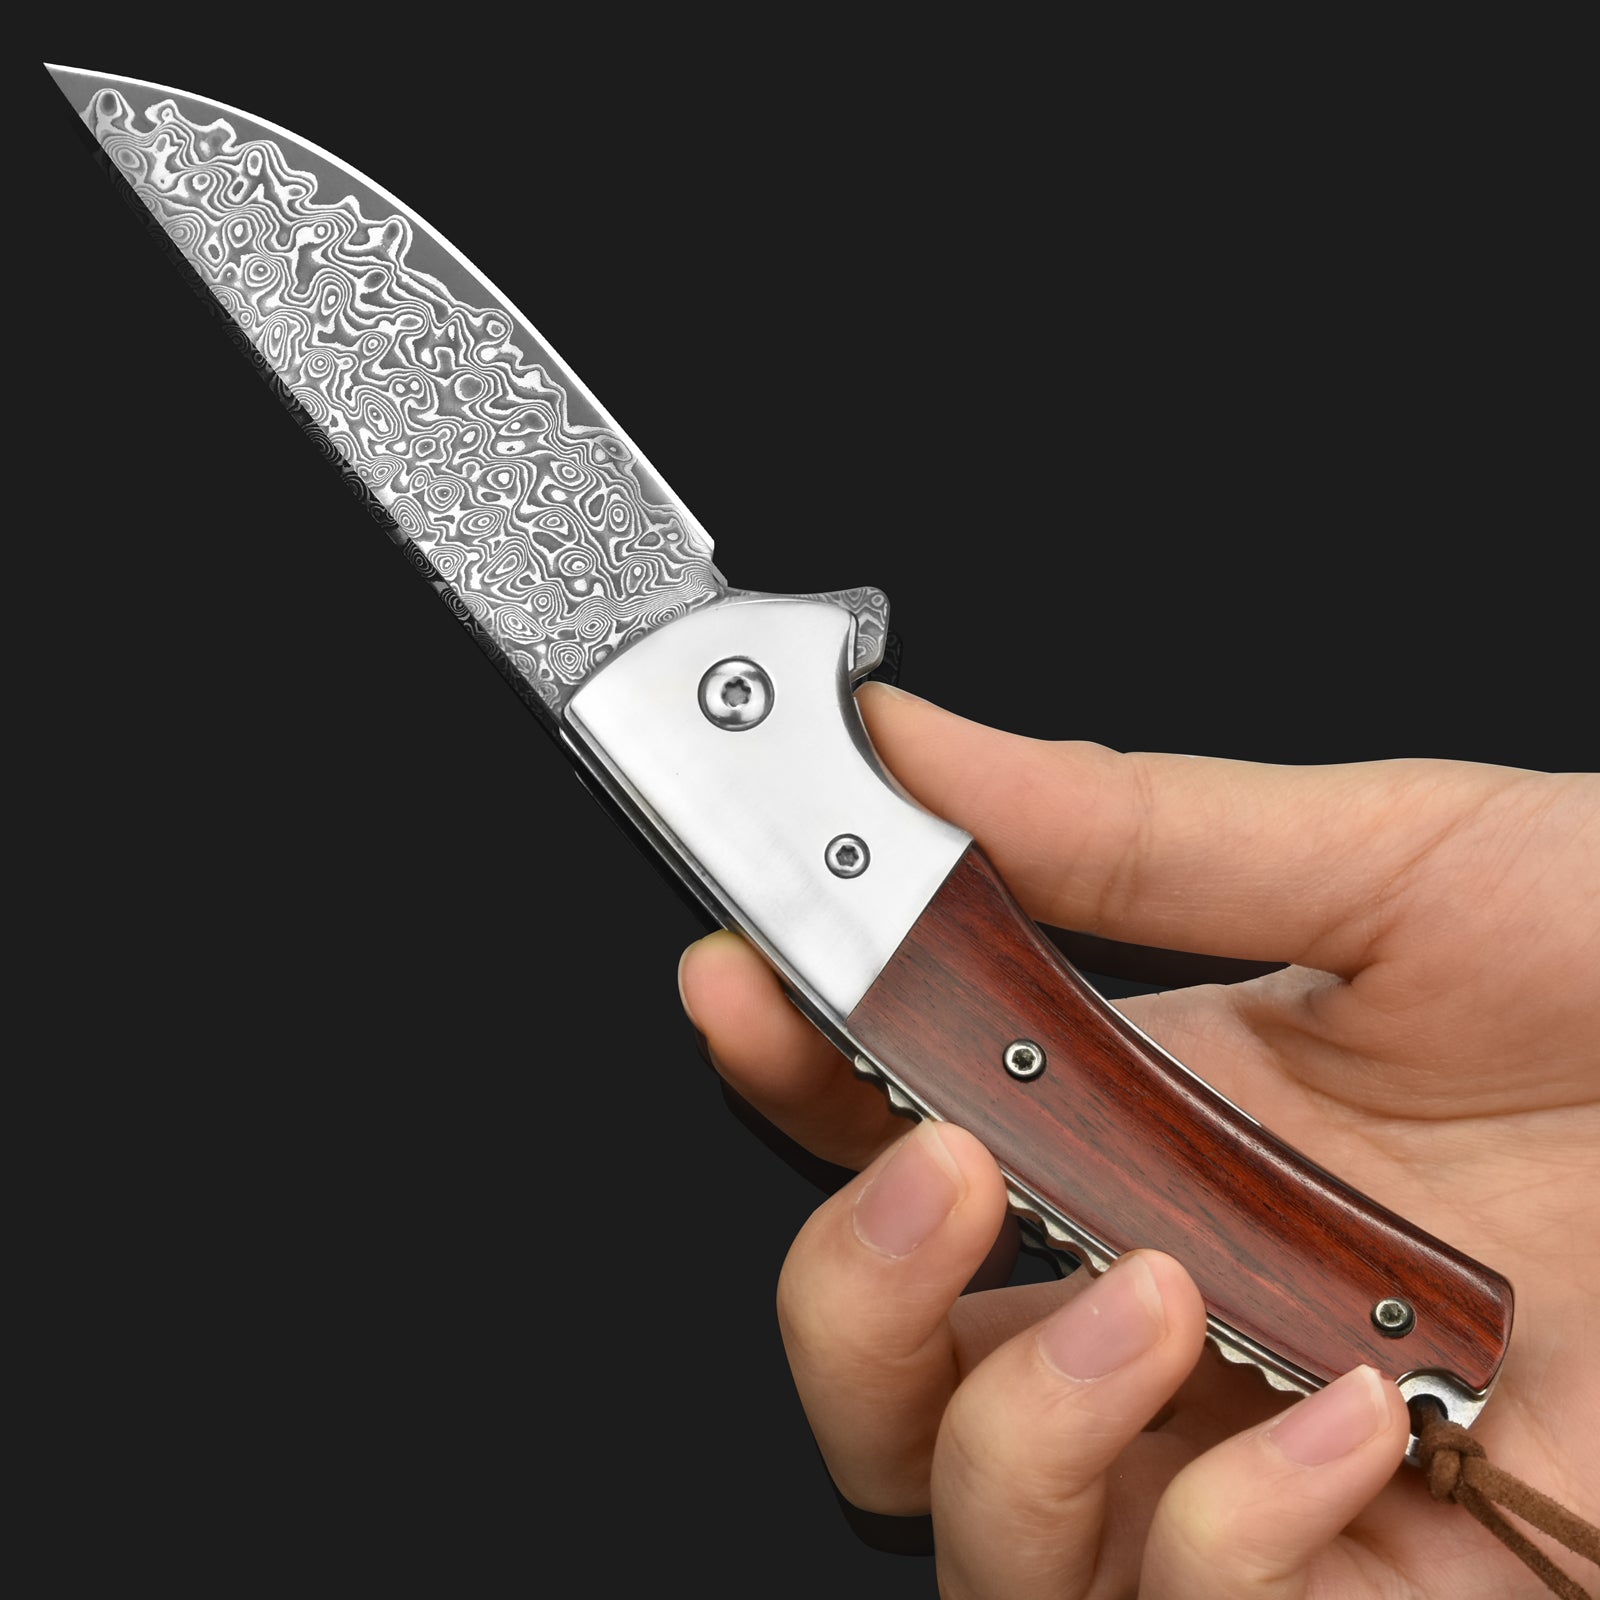 LOTHAR FLAMINGO Damascus Pocket Knife, 3 inch 67 Layers VG10